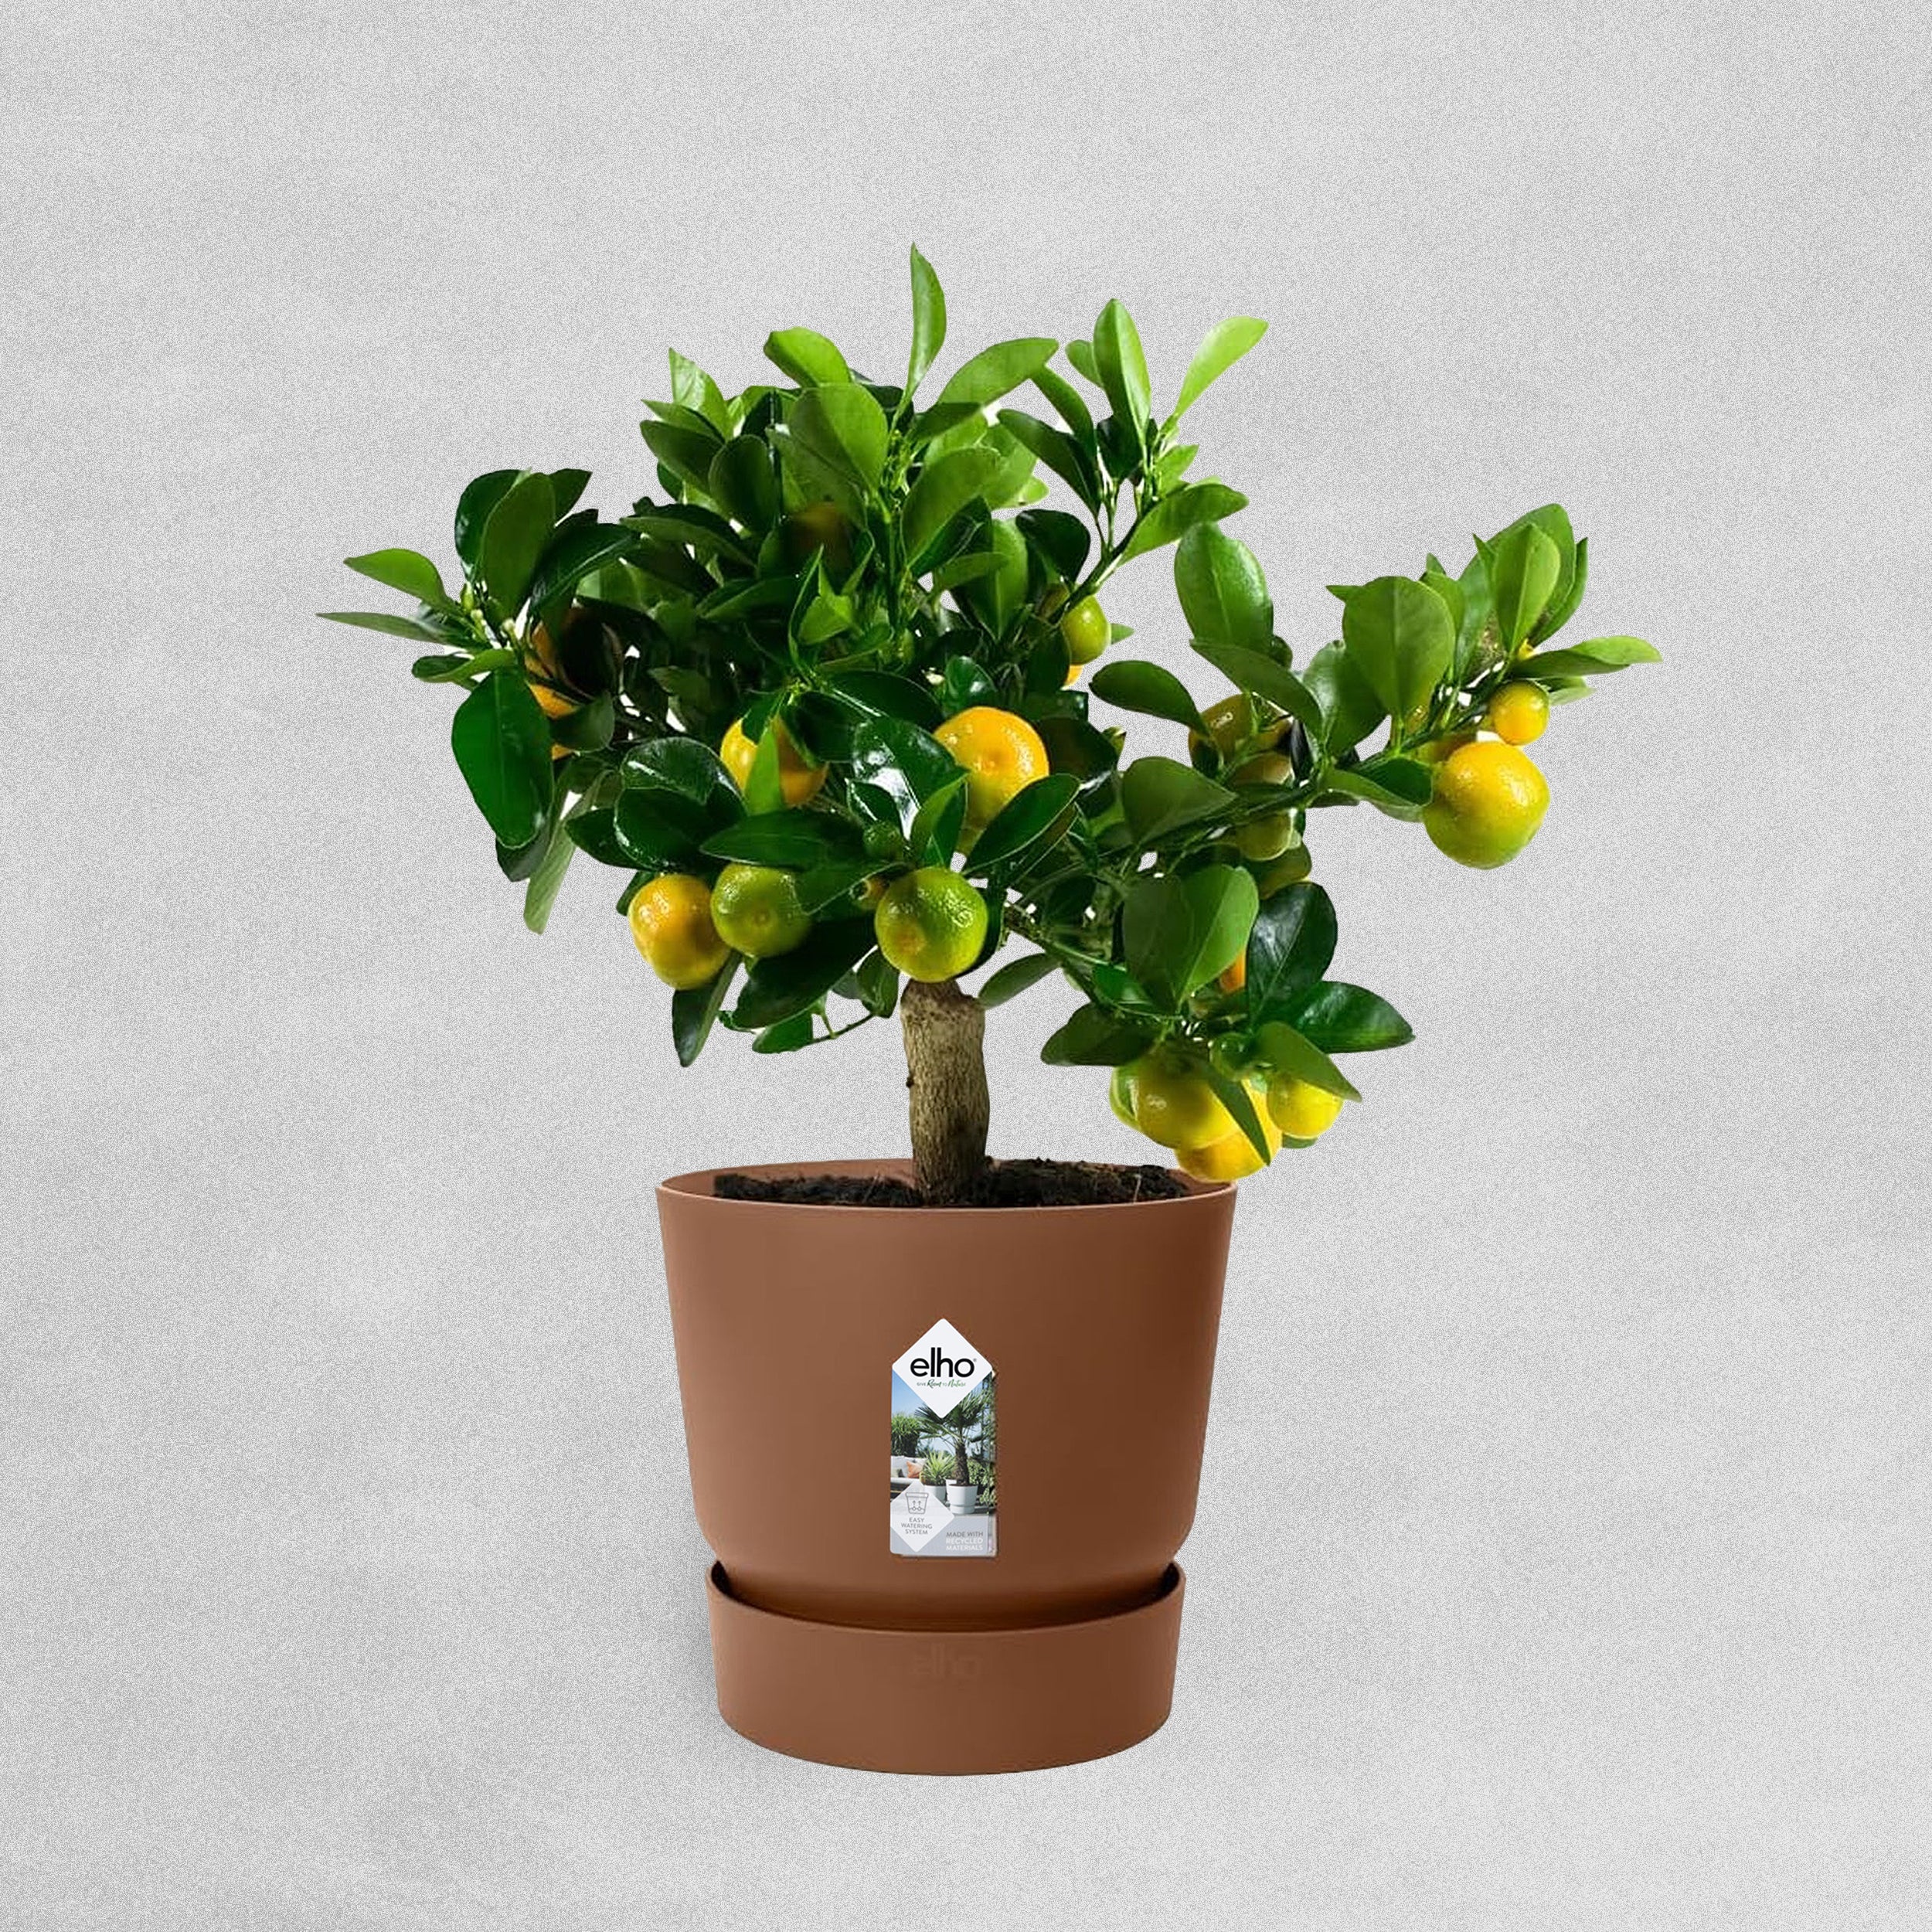 Elho Greenville Round Ginger/Brown Flower Pot